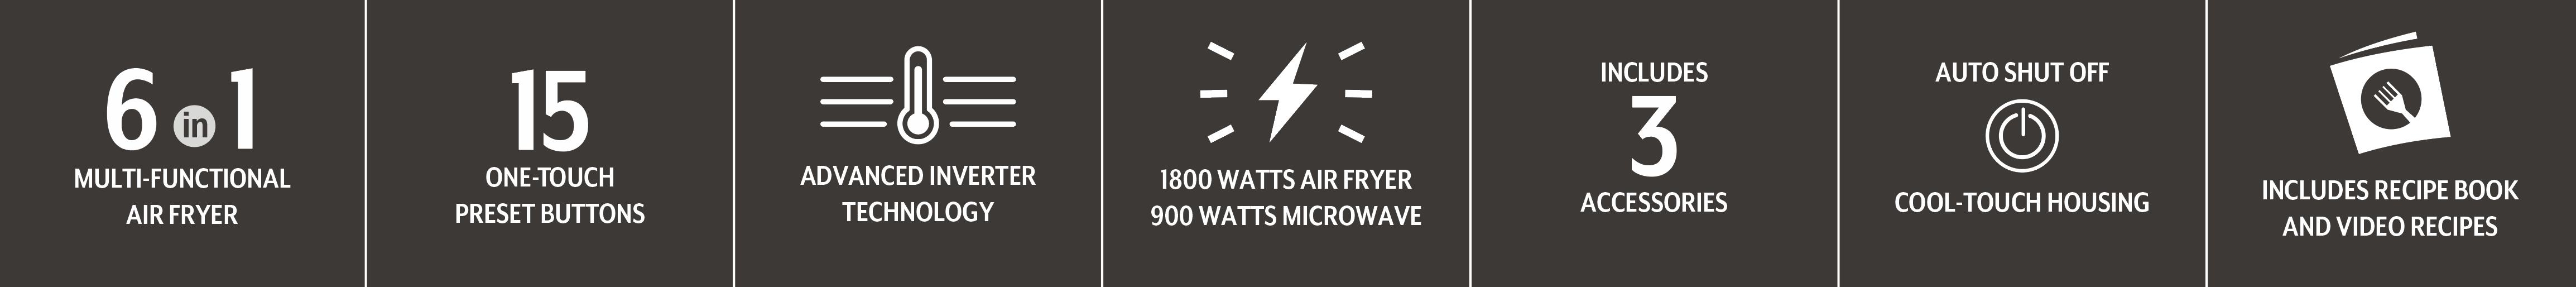 Air fryer microwave